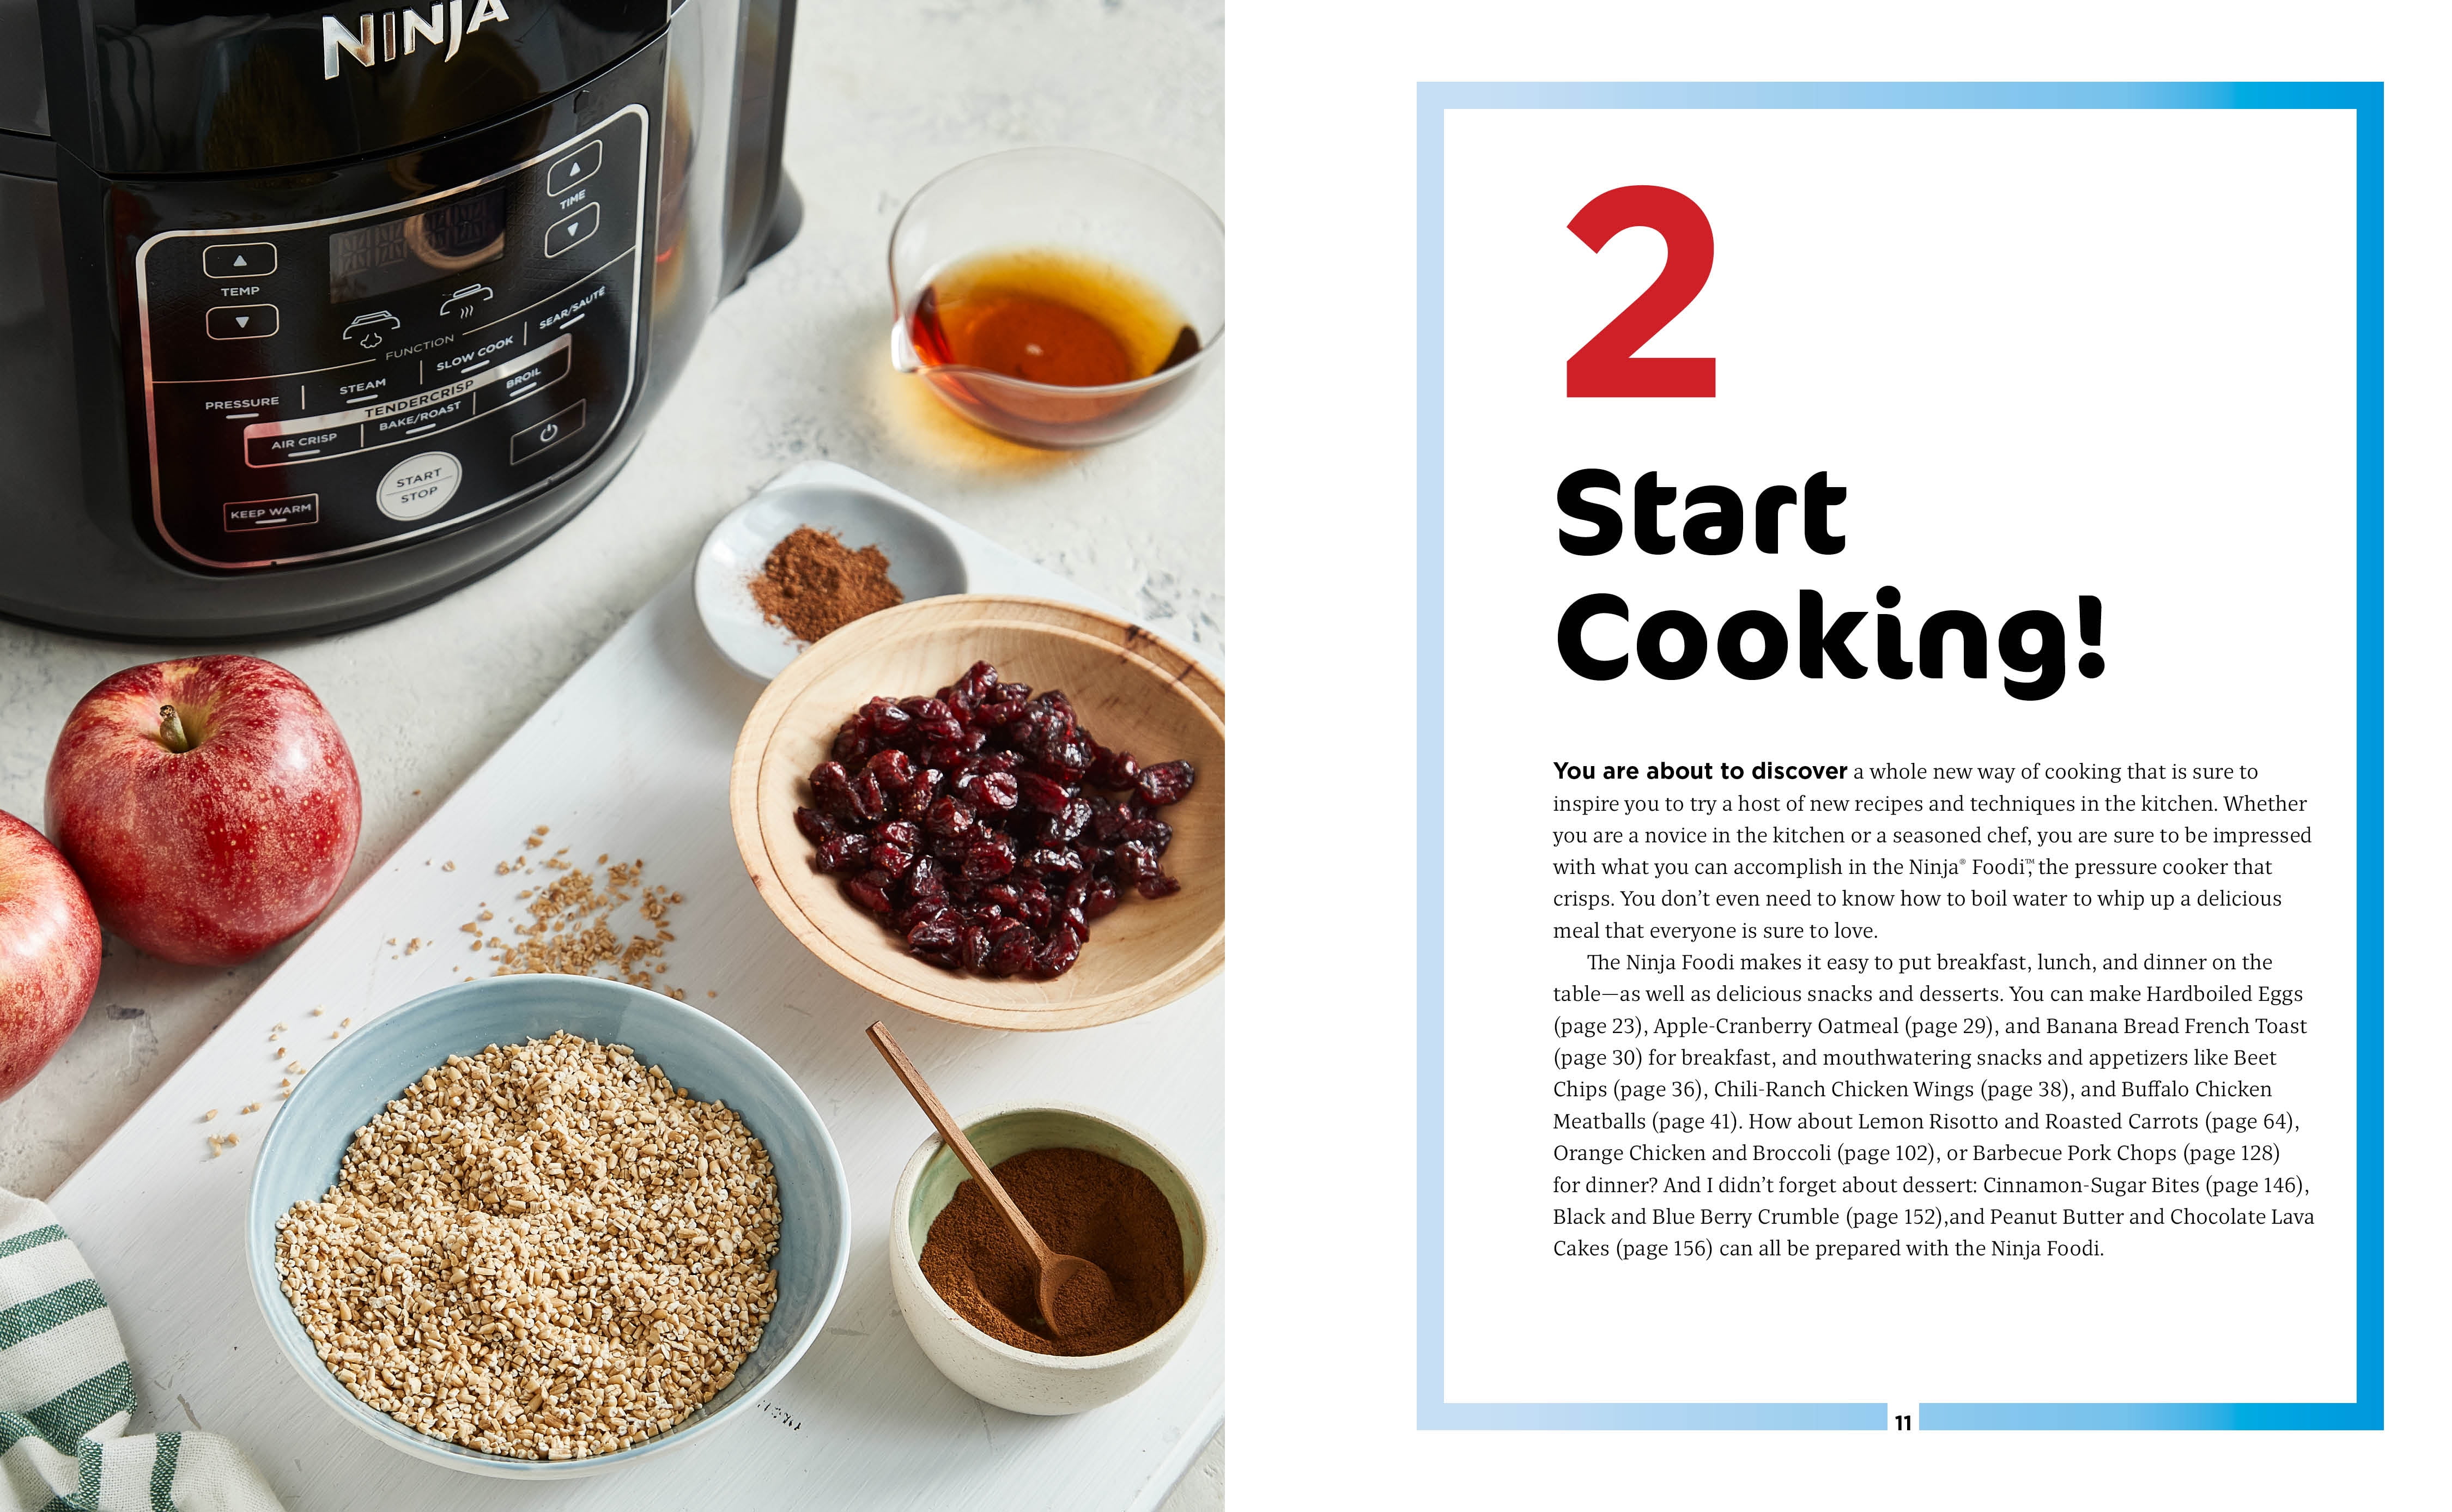 Ninja Foodi Pressure Cooker That Crisp 1000 Days: The Complete Guide of  Ninja Foodi Cookbook for Beginners to Pressure Cook, Air Fry, Crisp, Slow